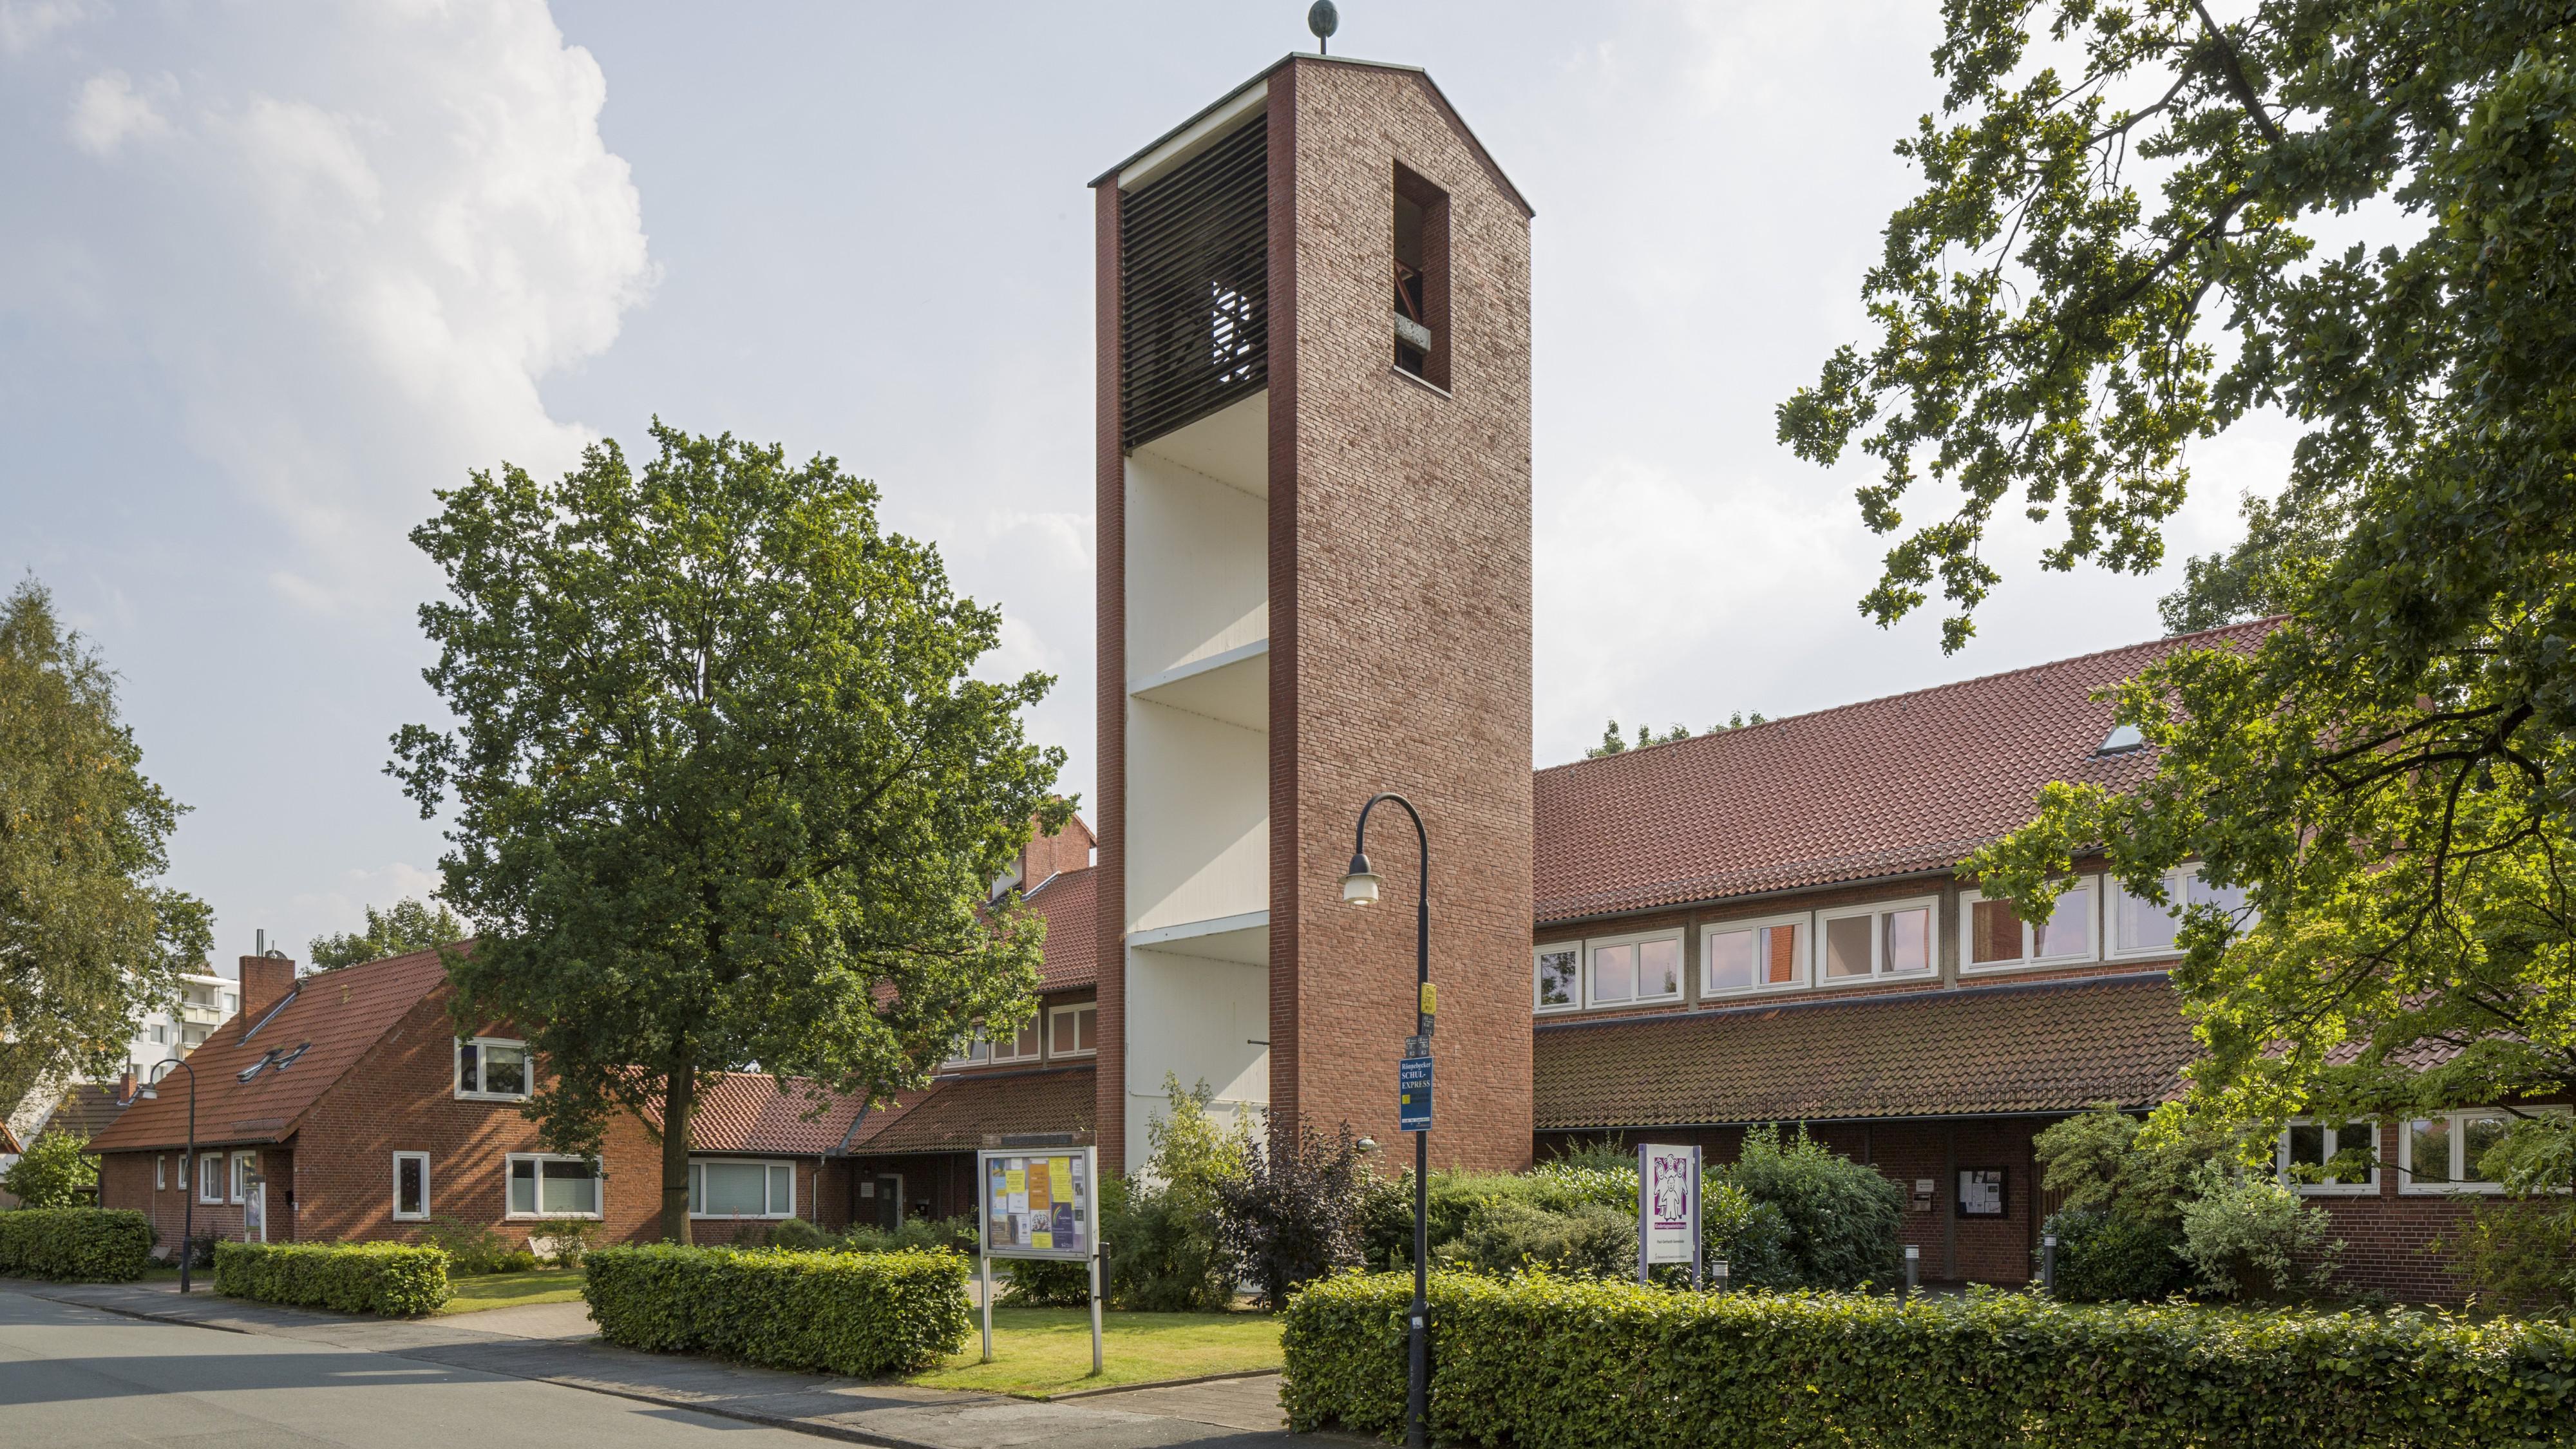 Bild 1 Kirche Rönnebeck-Farge - Paul-Gerhardt-Gemeinde Rönnebeck-Farge in Bremen